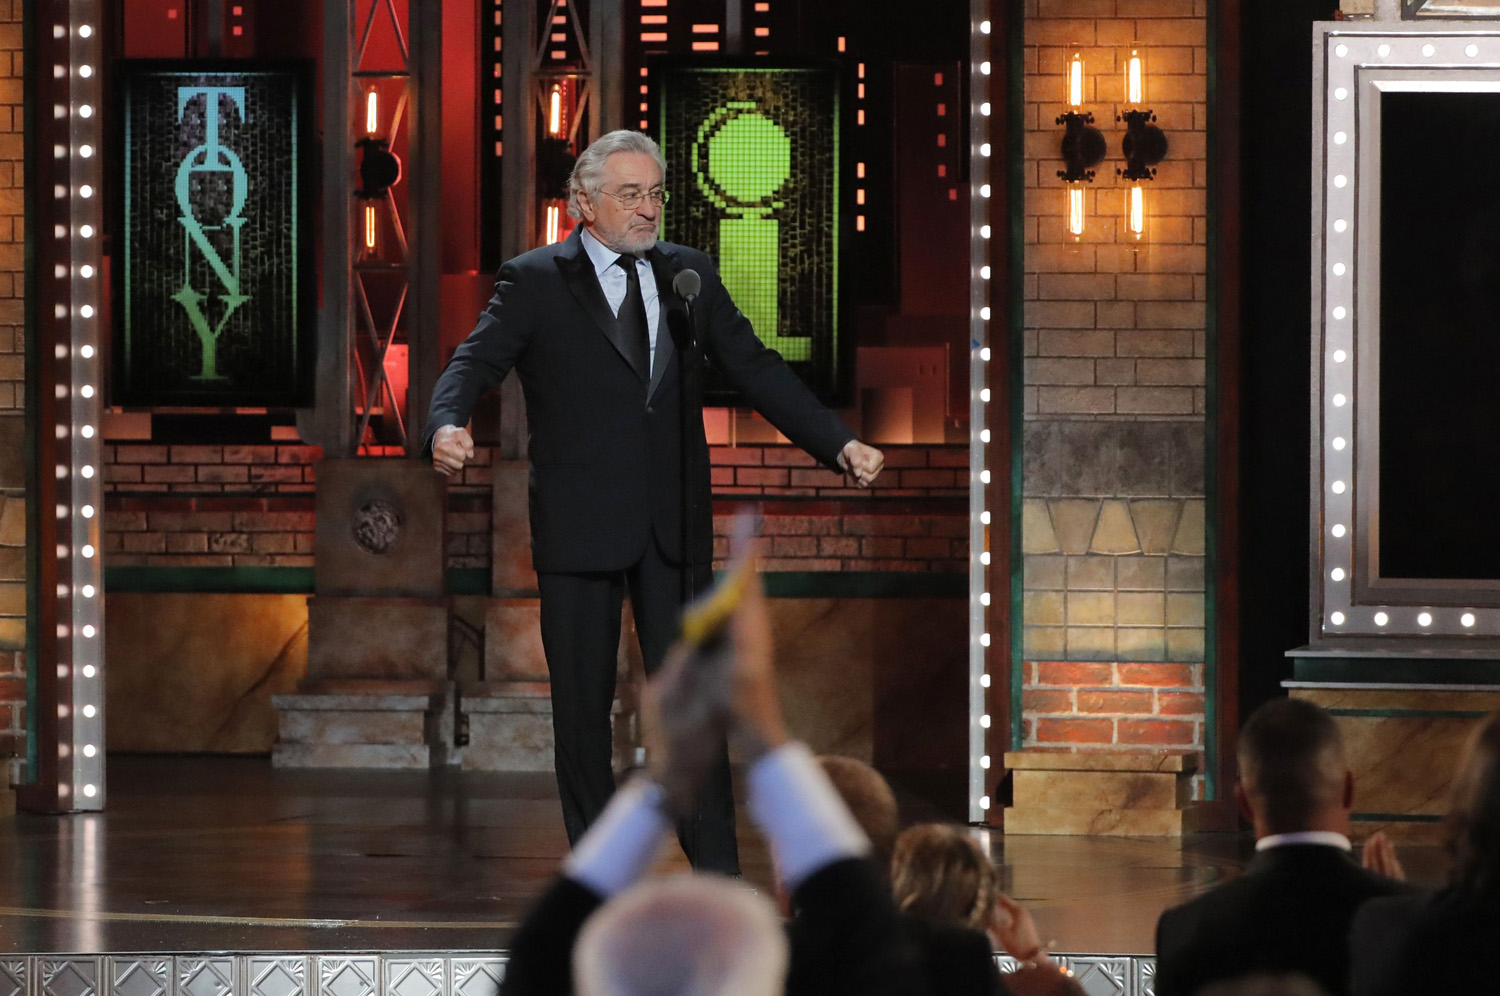 Robert De Niro es ovacionado de pie tras insultar a Trump (video)